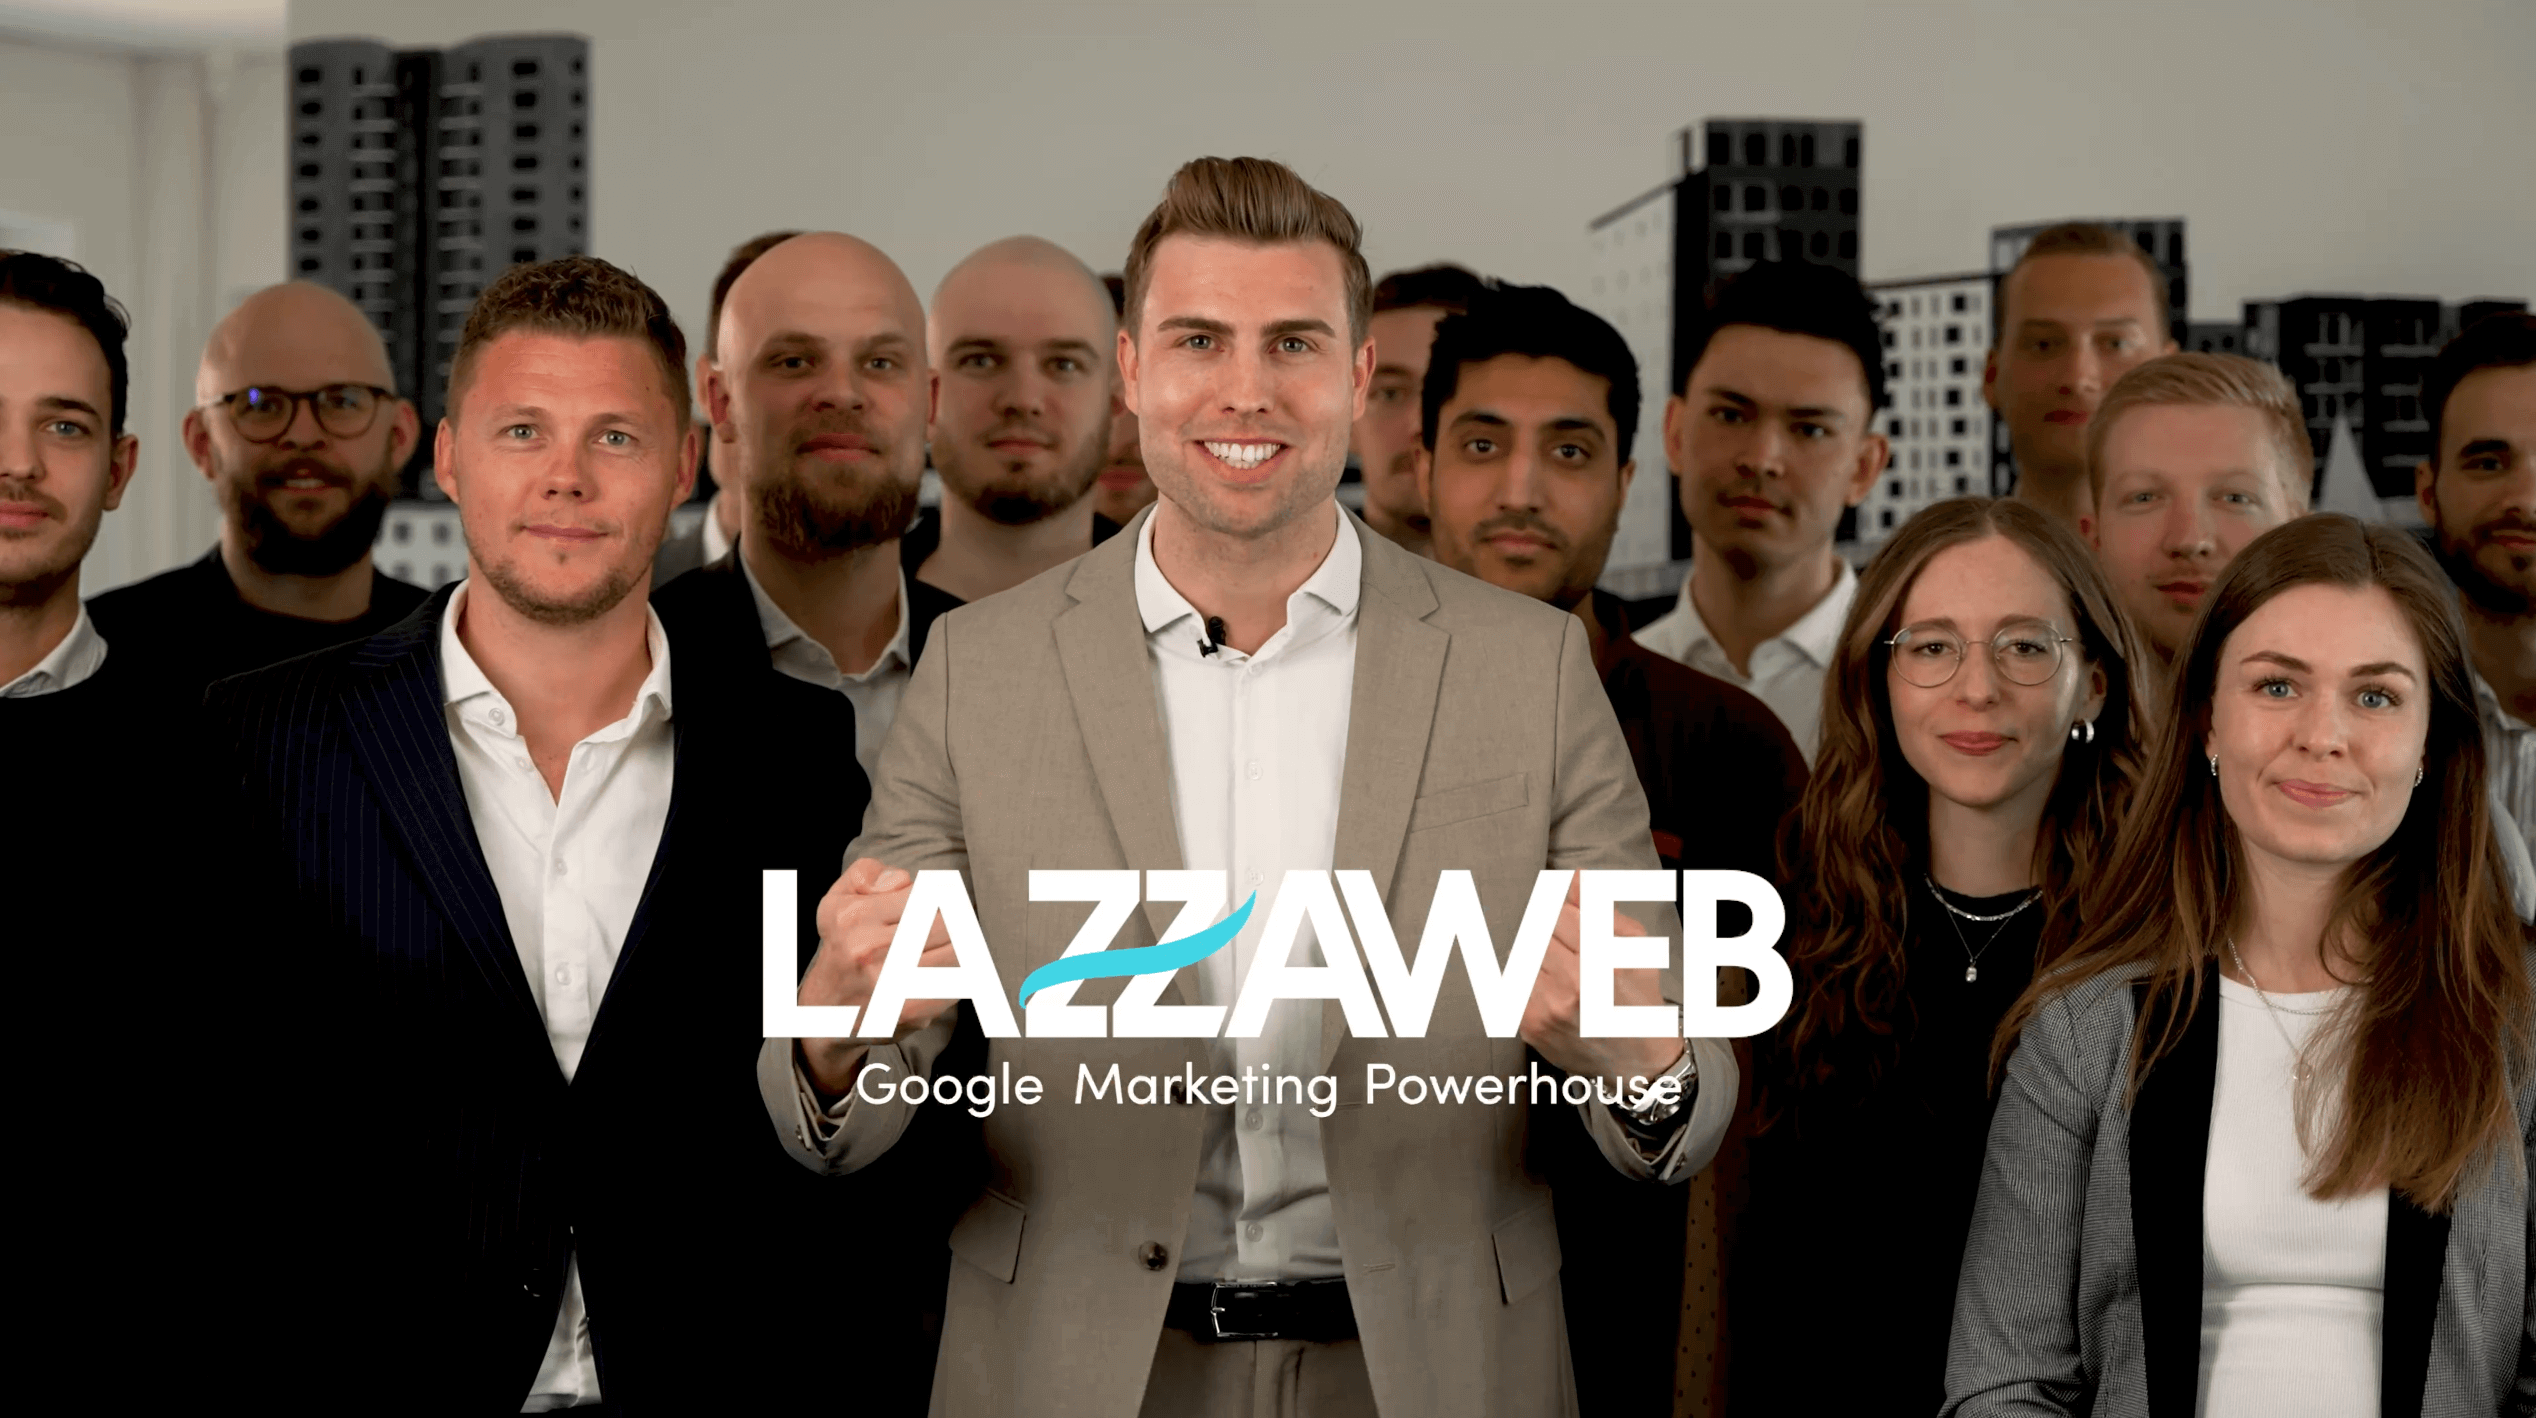 LAZZAWEB er et Google Marketing Powerhouse